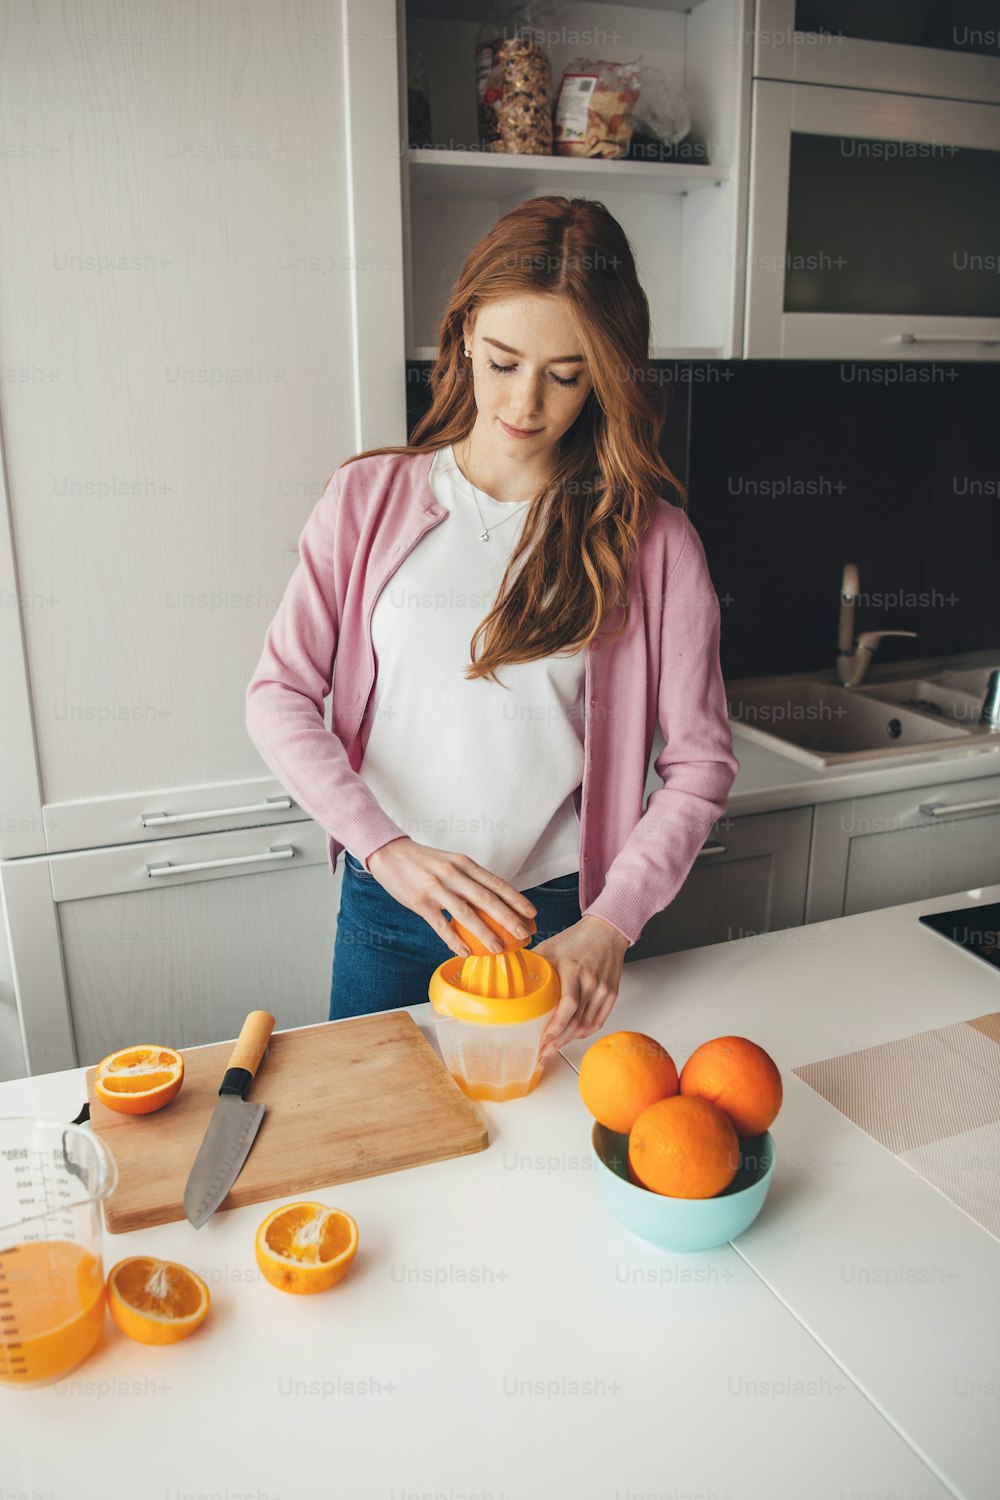 La donna zenzero con le lentiggini sta spremendo il succo d'arancia naturale a casa in cucina